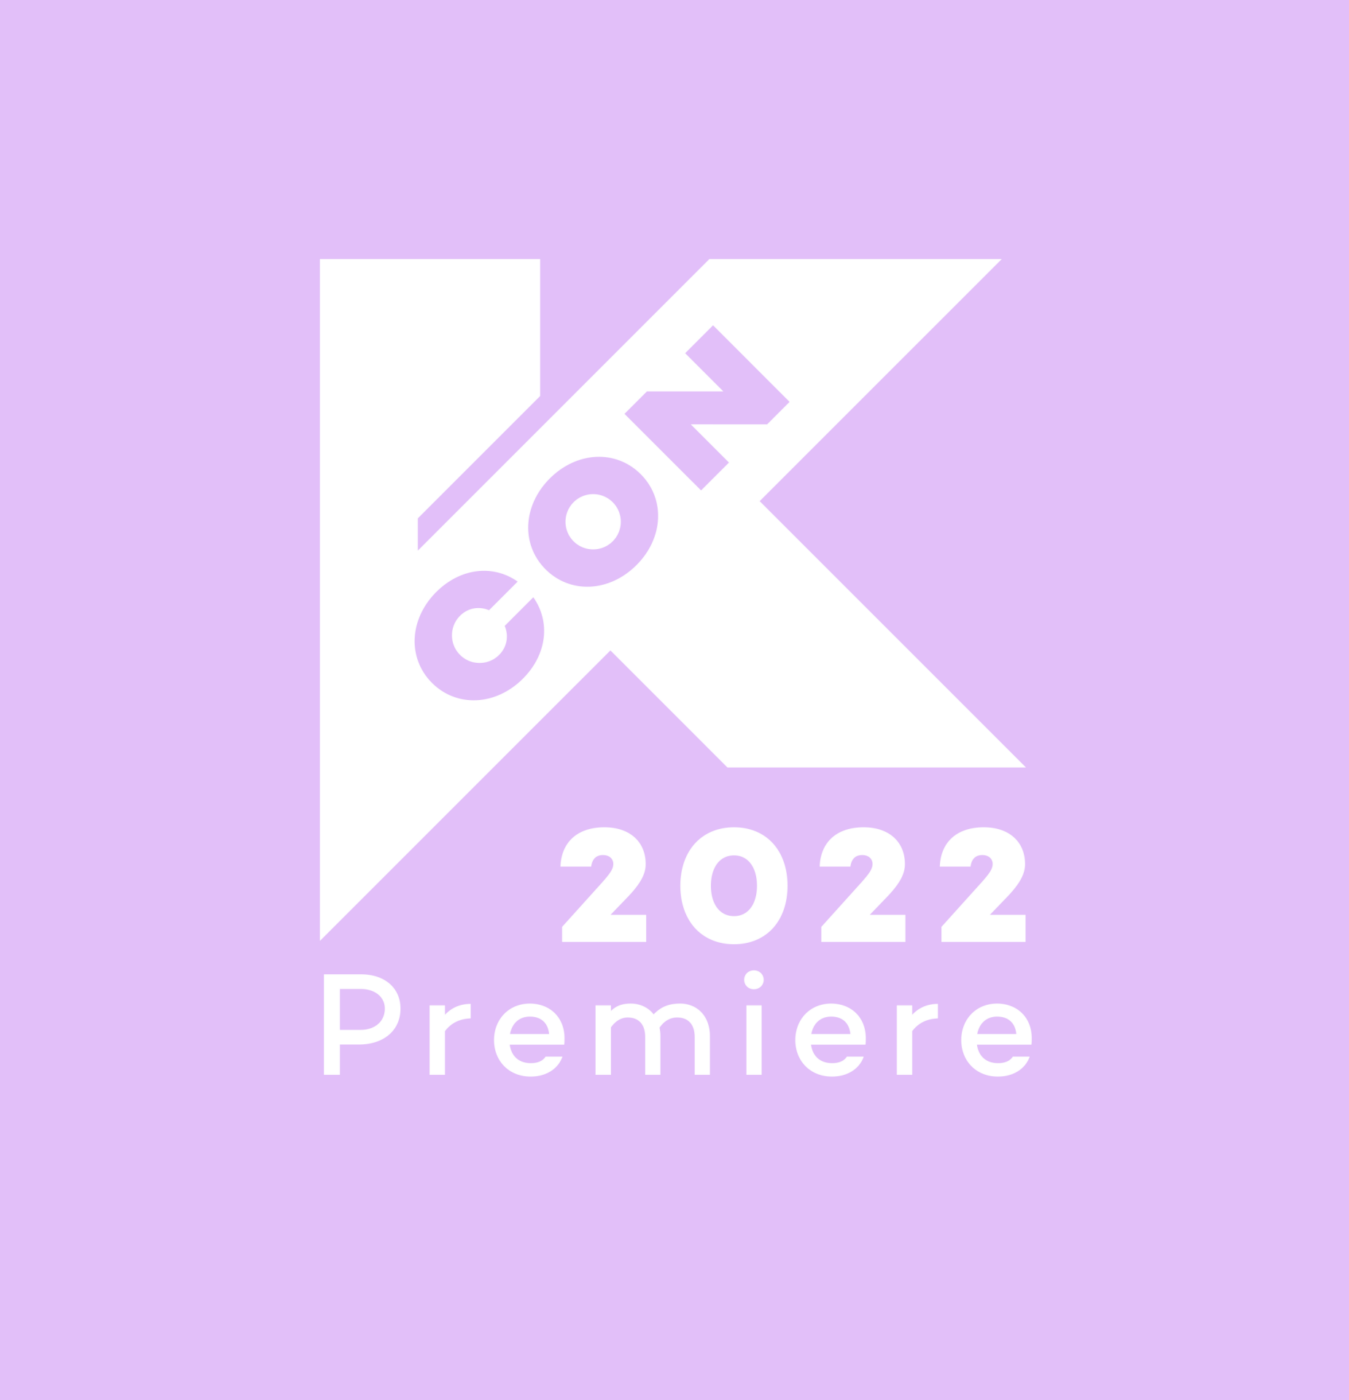 KCON 2022 Premiere